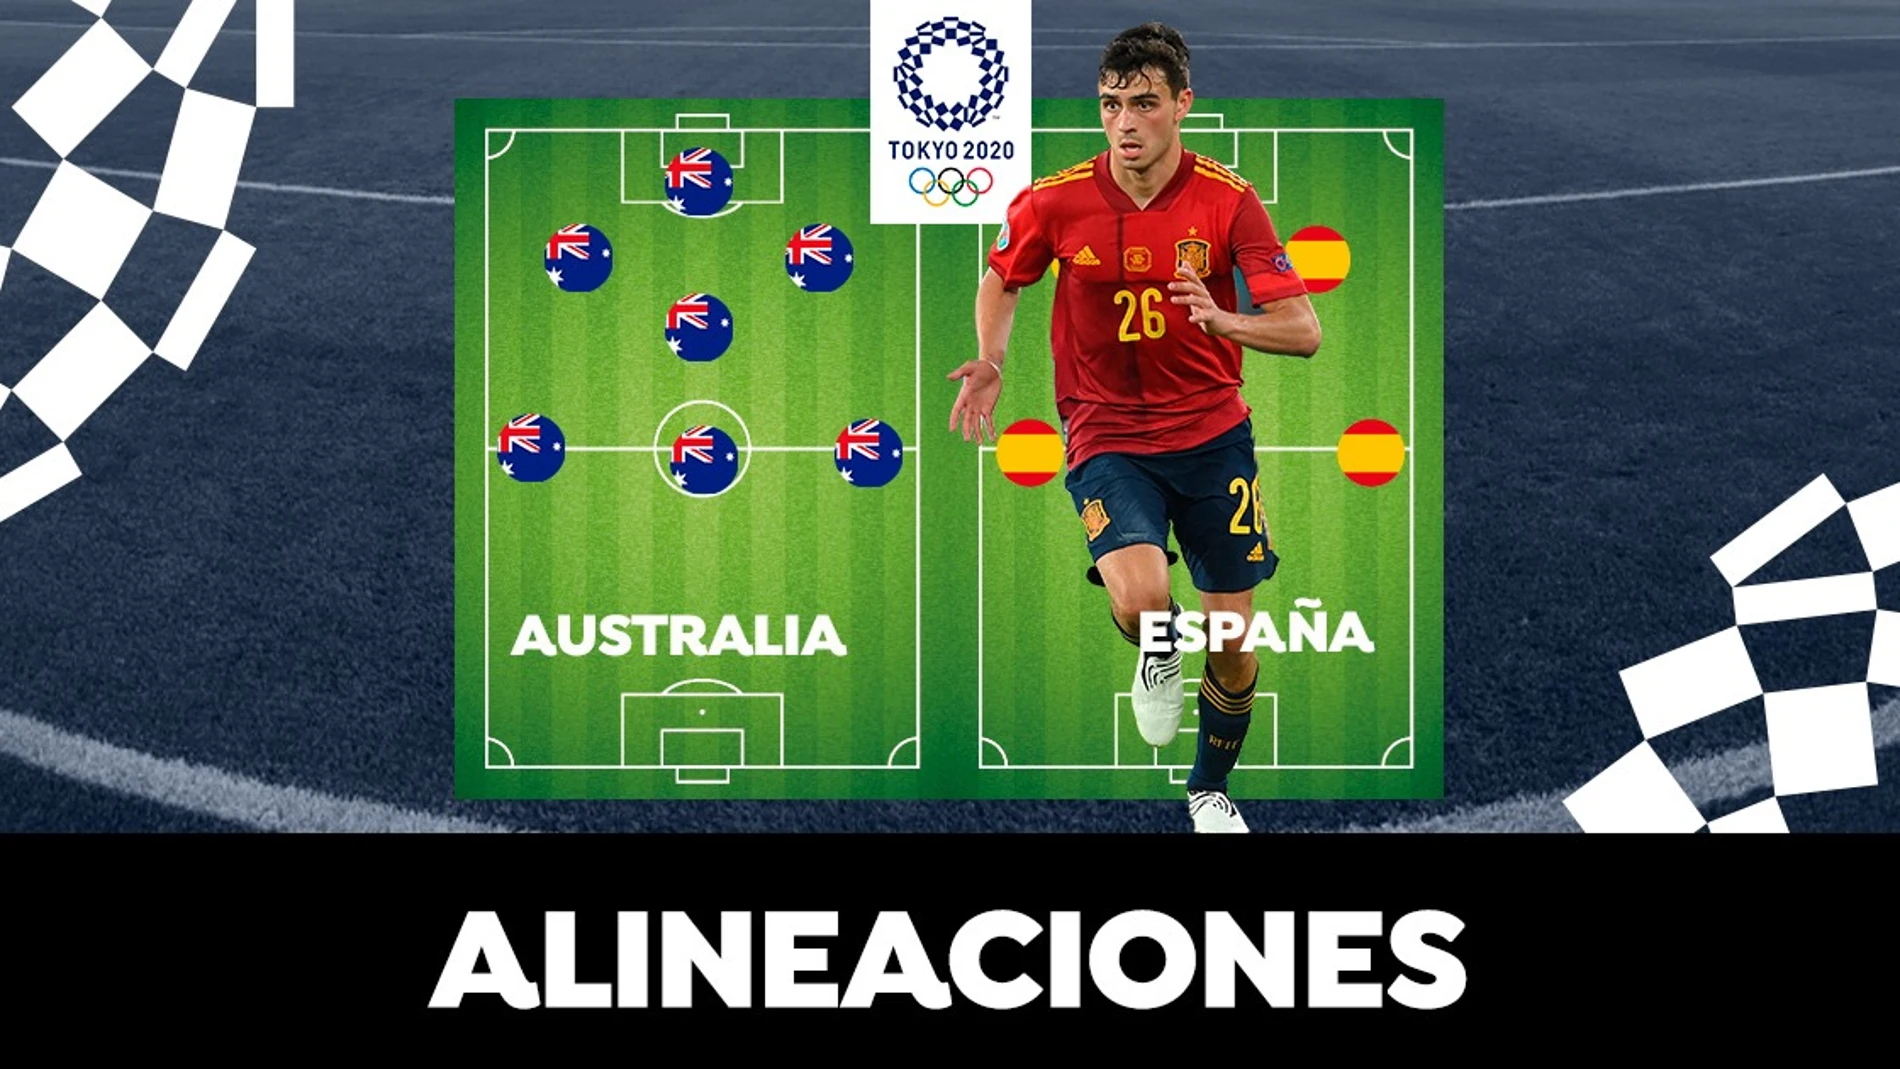 Alineación OFICIAL de España hoy contra Australia en el partido de los Juegos Olímpicos de Tokio 2020